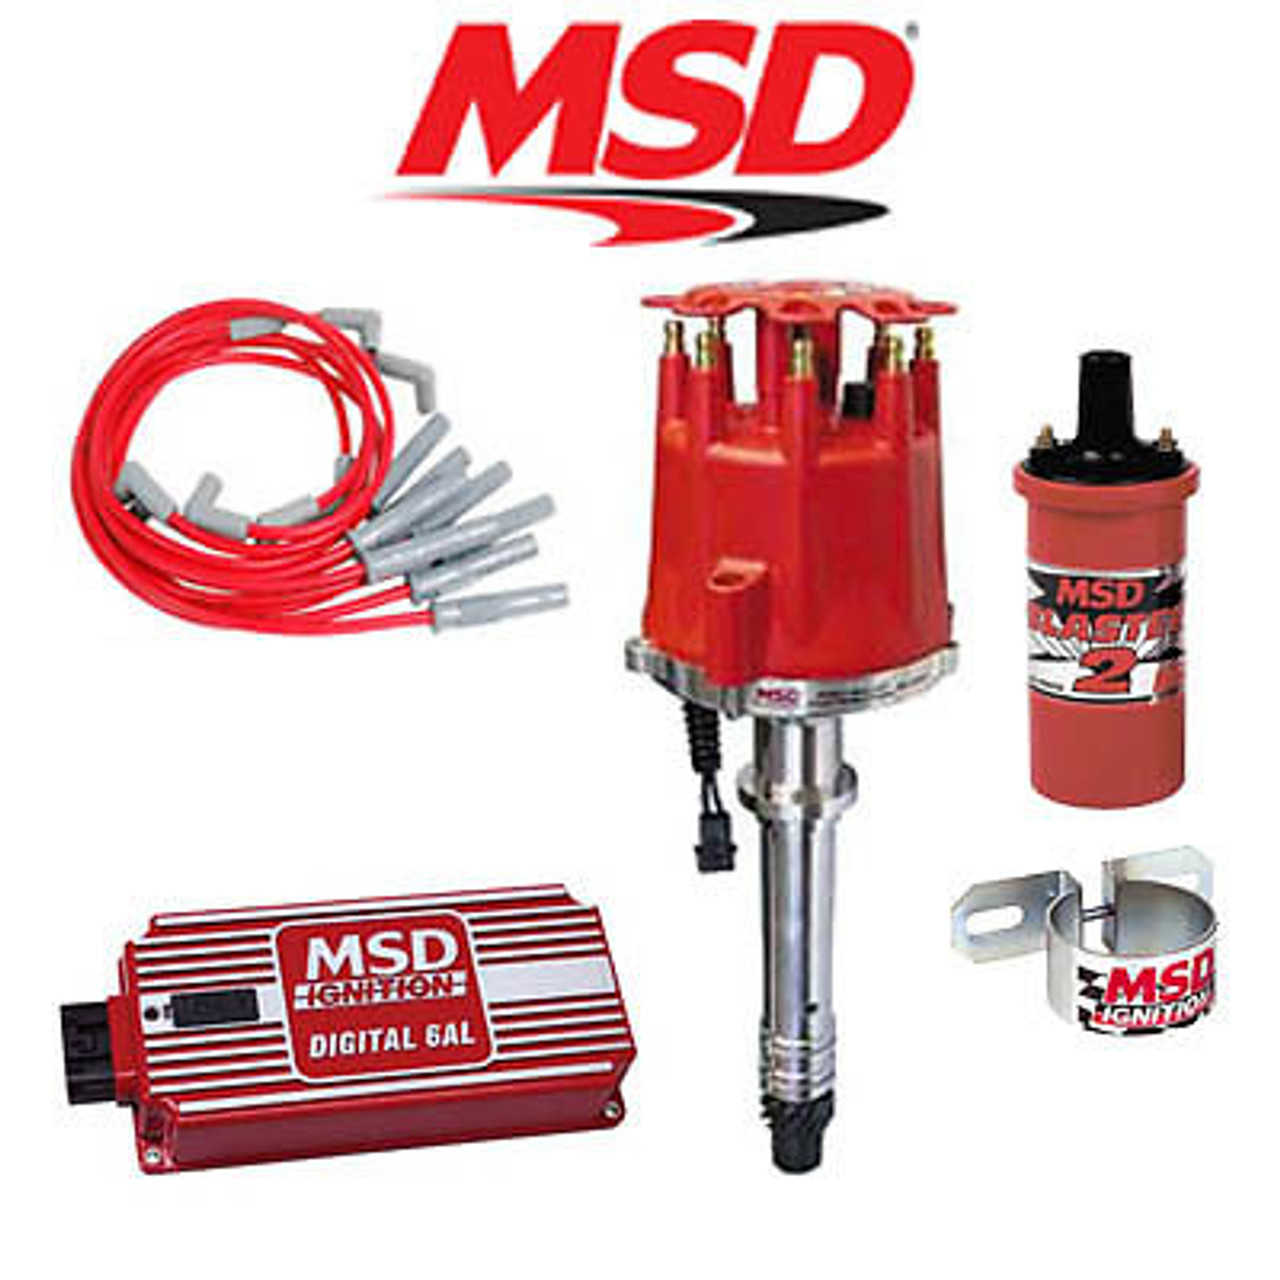 MSD 9001 Complete Ignition Kit - Digital 6AL/Distributor/Wires/Coil/Bracket BBC